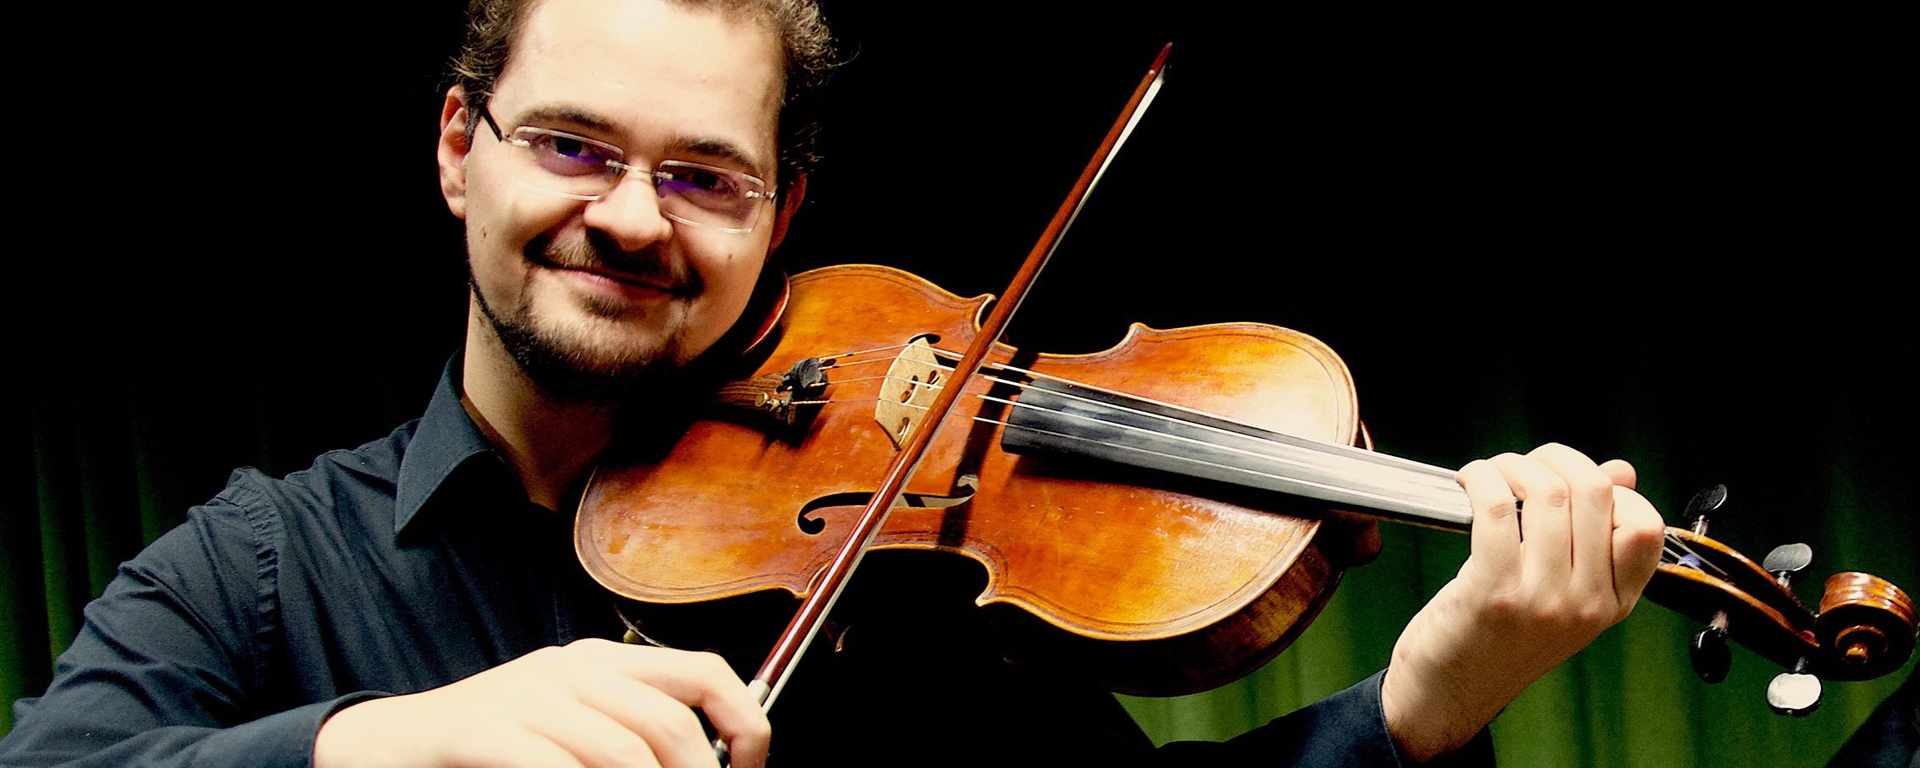 Balkanmusik an Geige, Bratsche oder Klavier